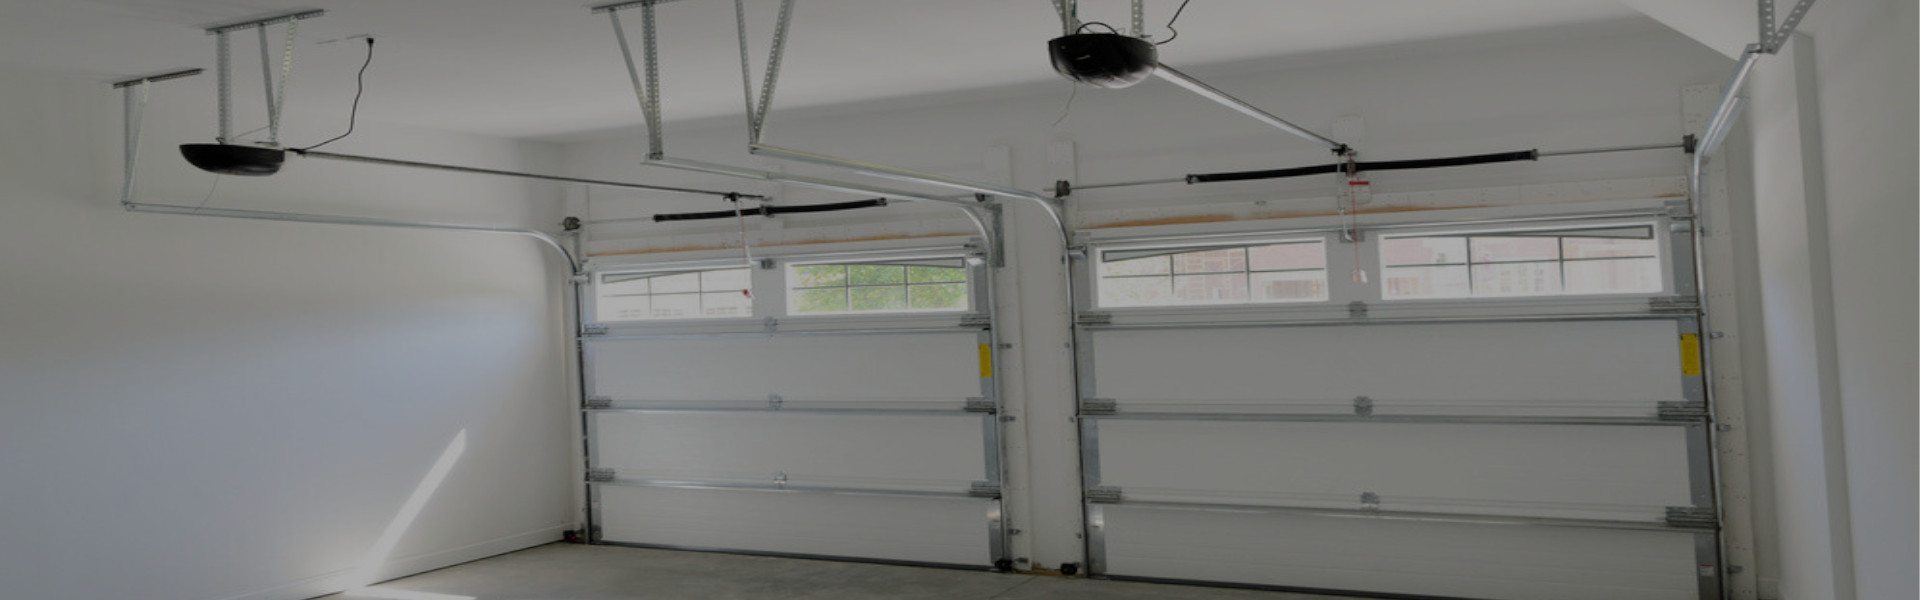 Slider Garage Door Repair, Glaziers in Brompton, SW3